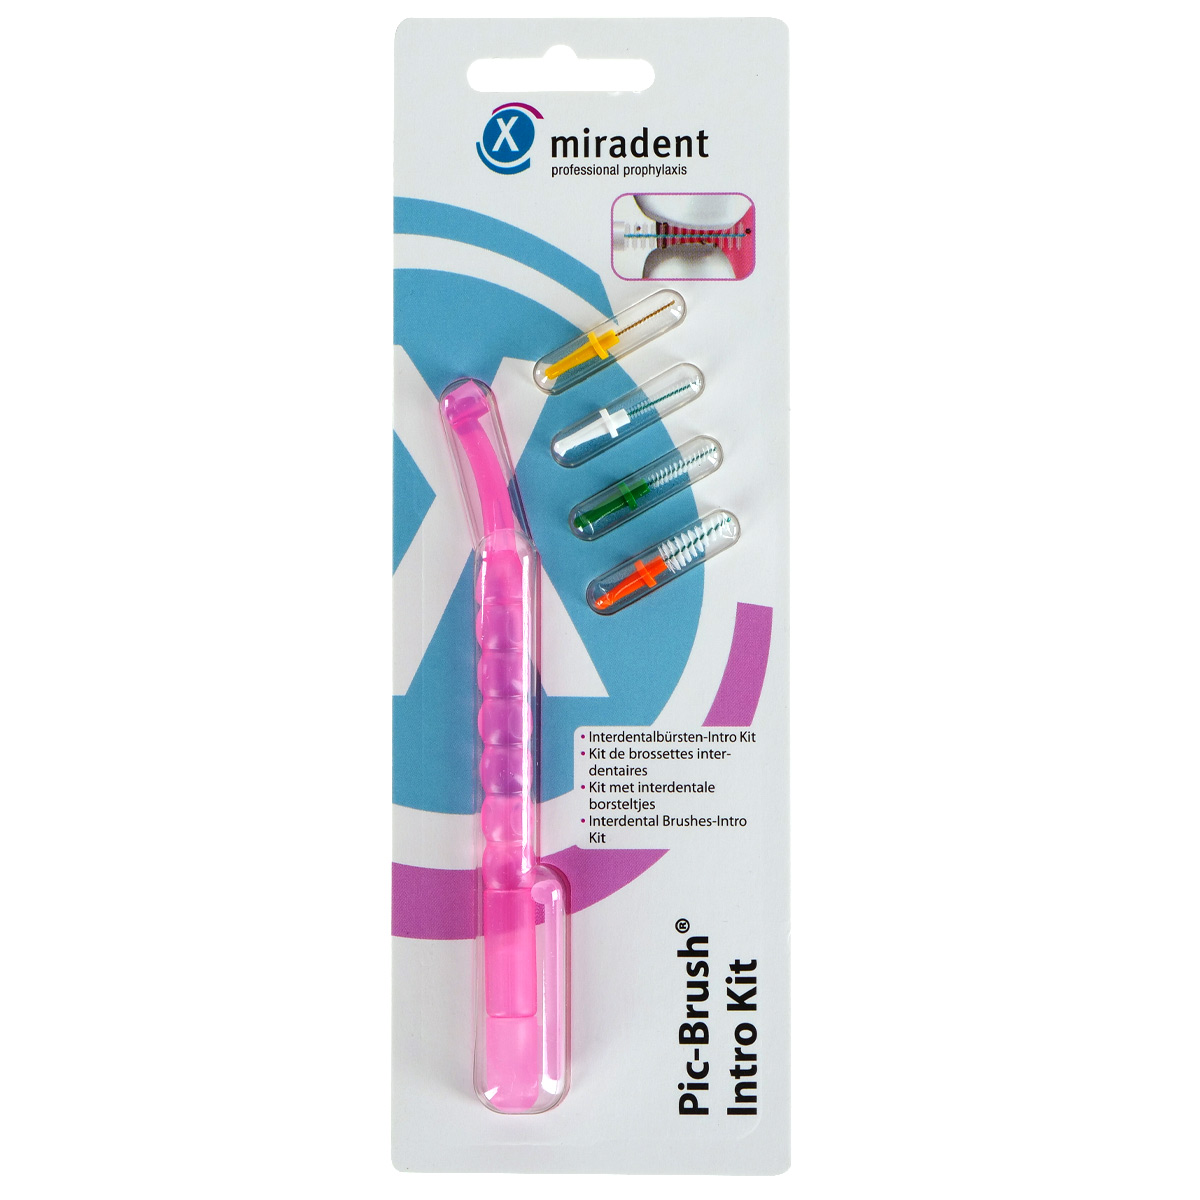 Межзубный ершик miradent Pic-Brush Intro Kit набор с держателем